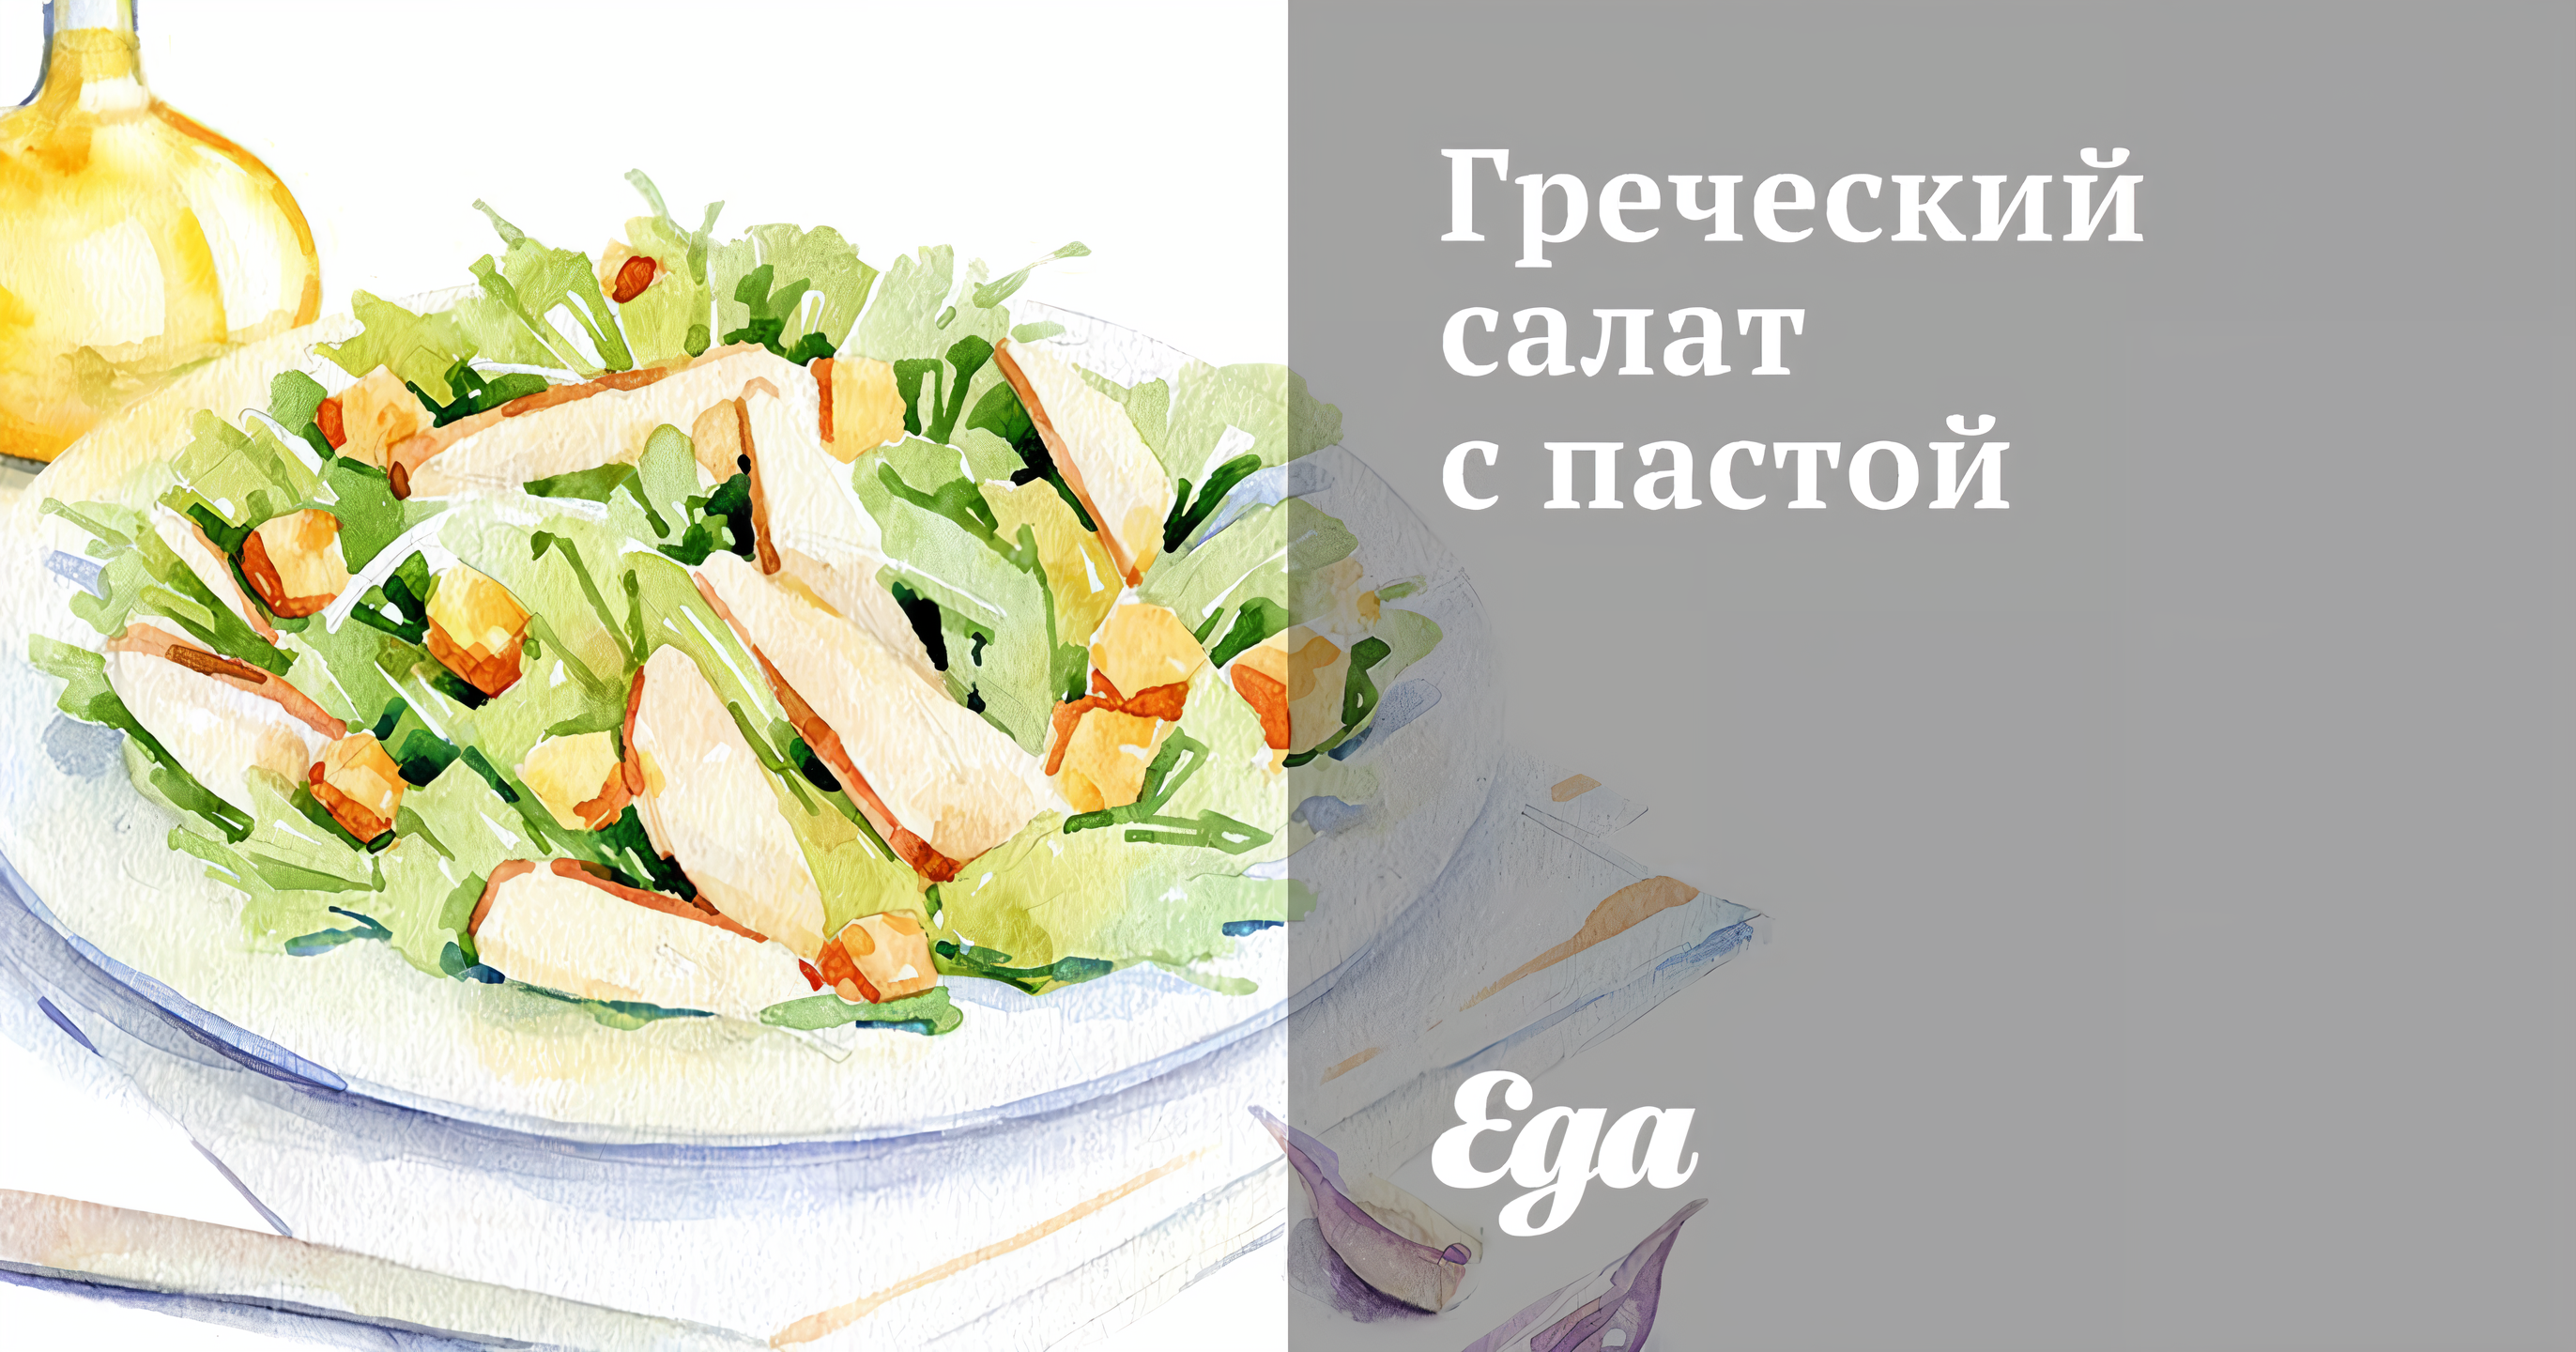 Греческий салат с пастой